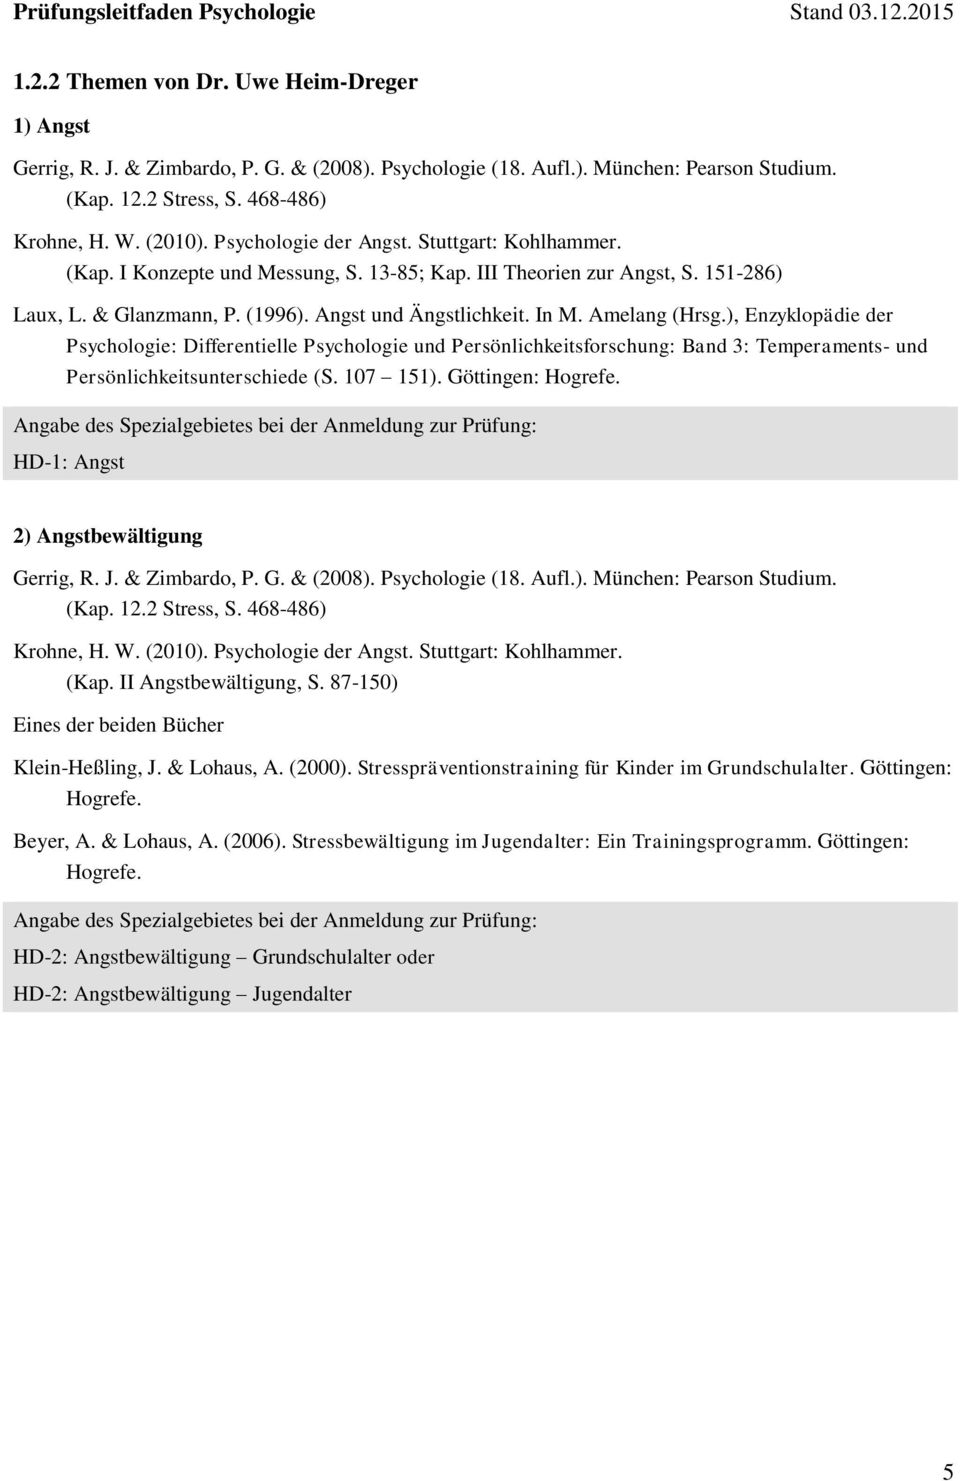 Amelang (Hrsg.), Enzyklopädie der Psychologie: Differentielle Psychologie und Persönlichkeitsforschung: Band 3: Temperaments- und Persönlichkeitsunterschiede (S. 107 151). Göttingen: Hogrefe.